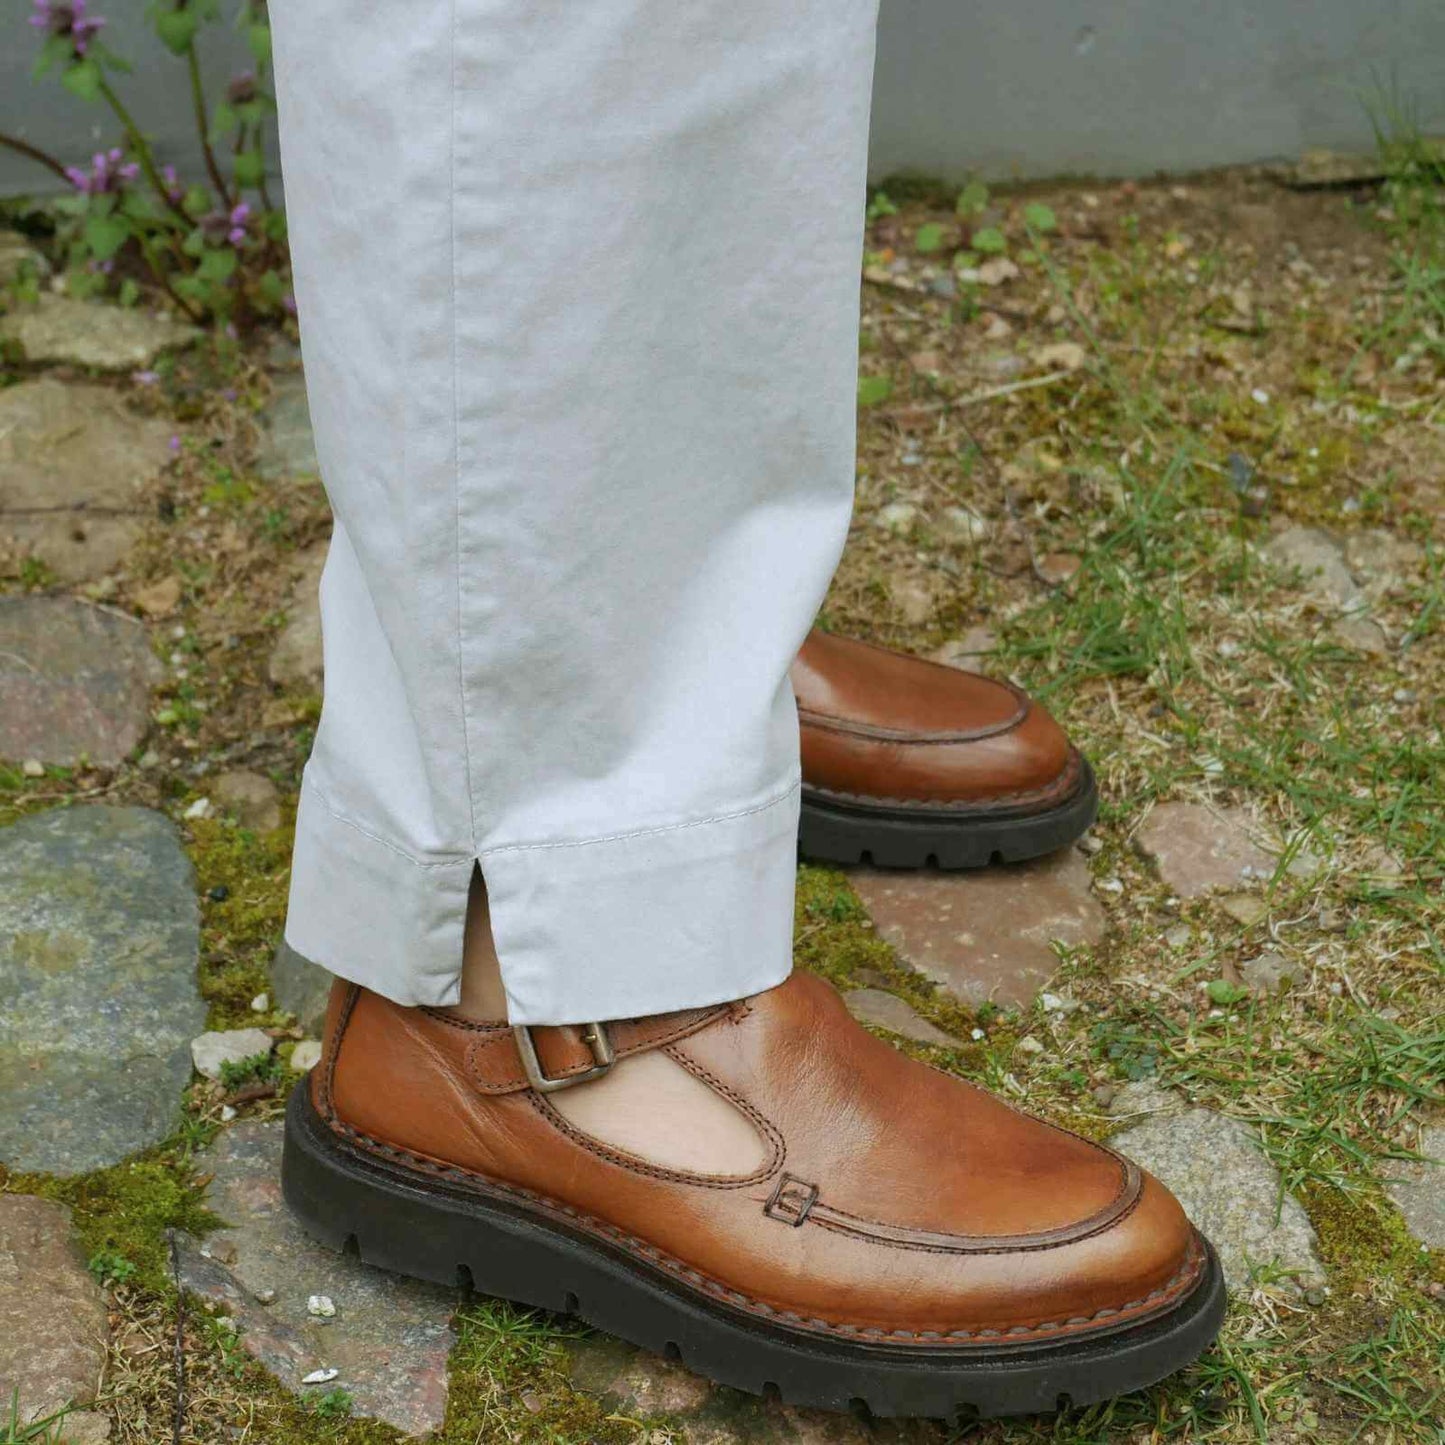 slids i ben på lyse bukser med brune sko til på græs